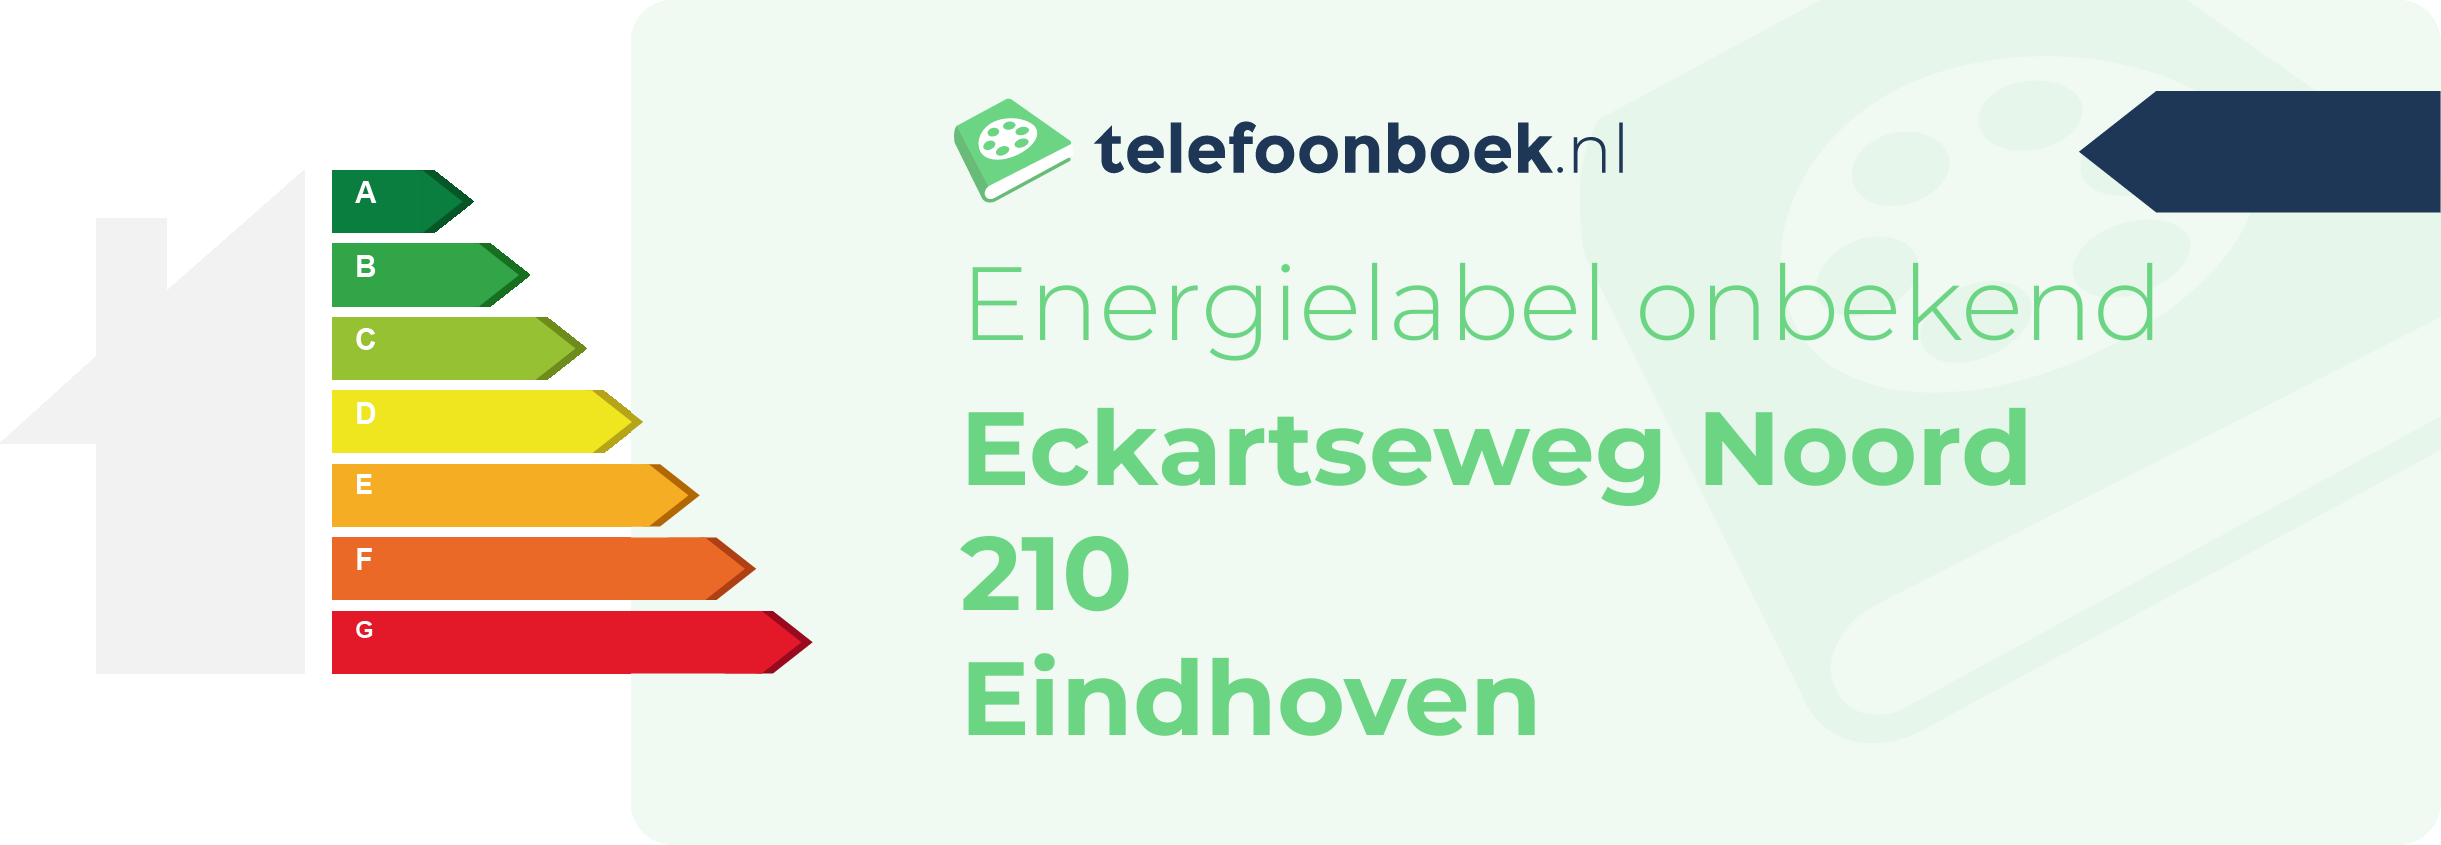 Energielabel Eckartseweg Noord 210 Eindhoven